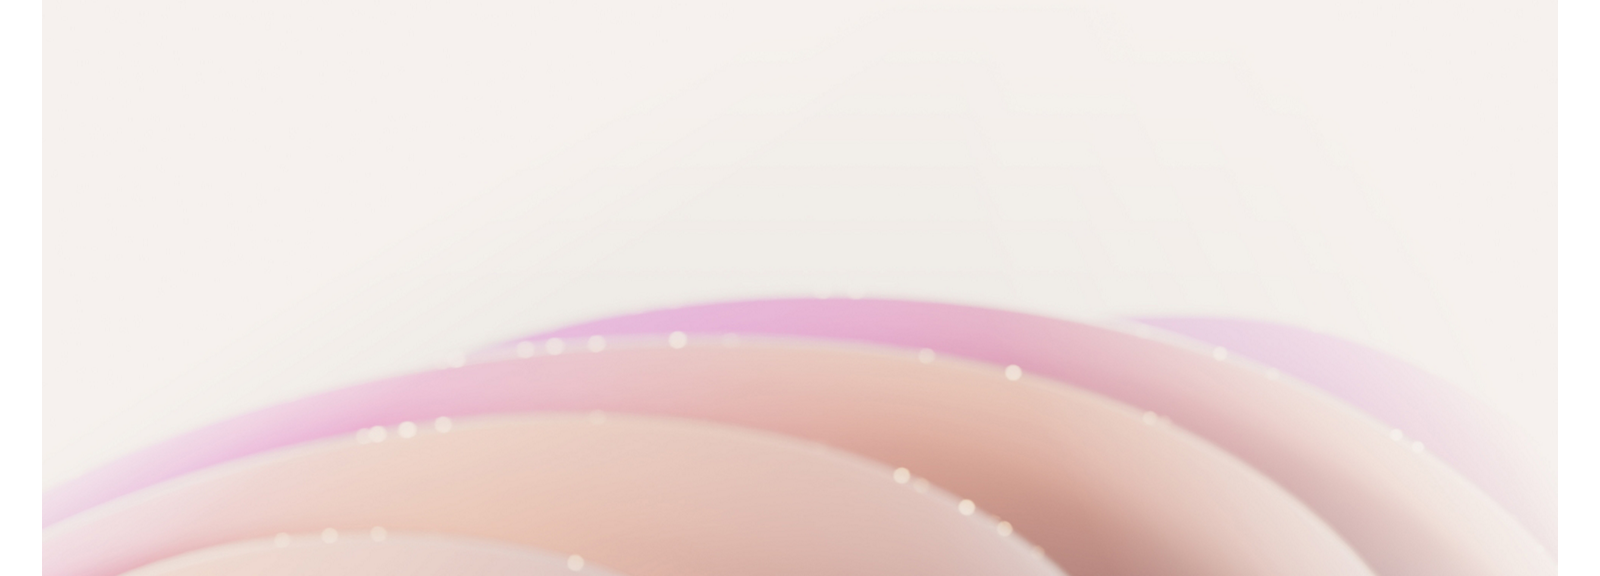 Abstrakter Hintergrund mit weichen, verschwommenen rosa und weißen Kurven und einer dezenten Glitzertextur.